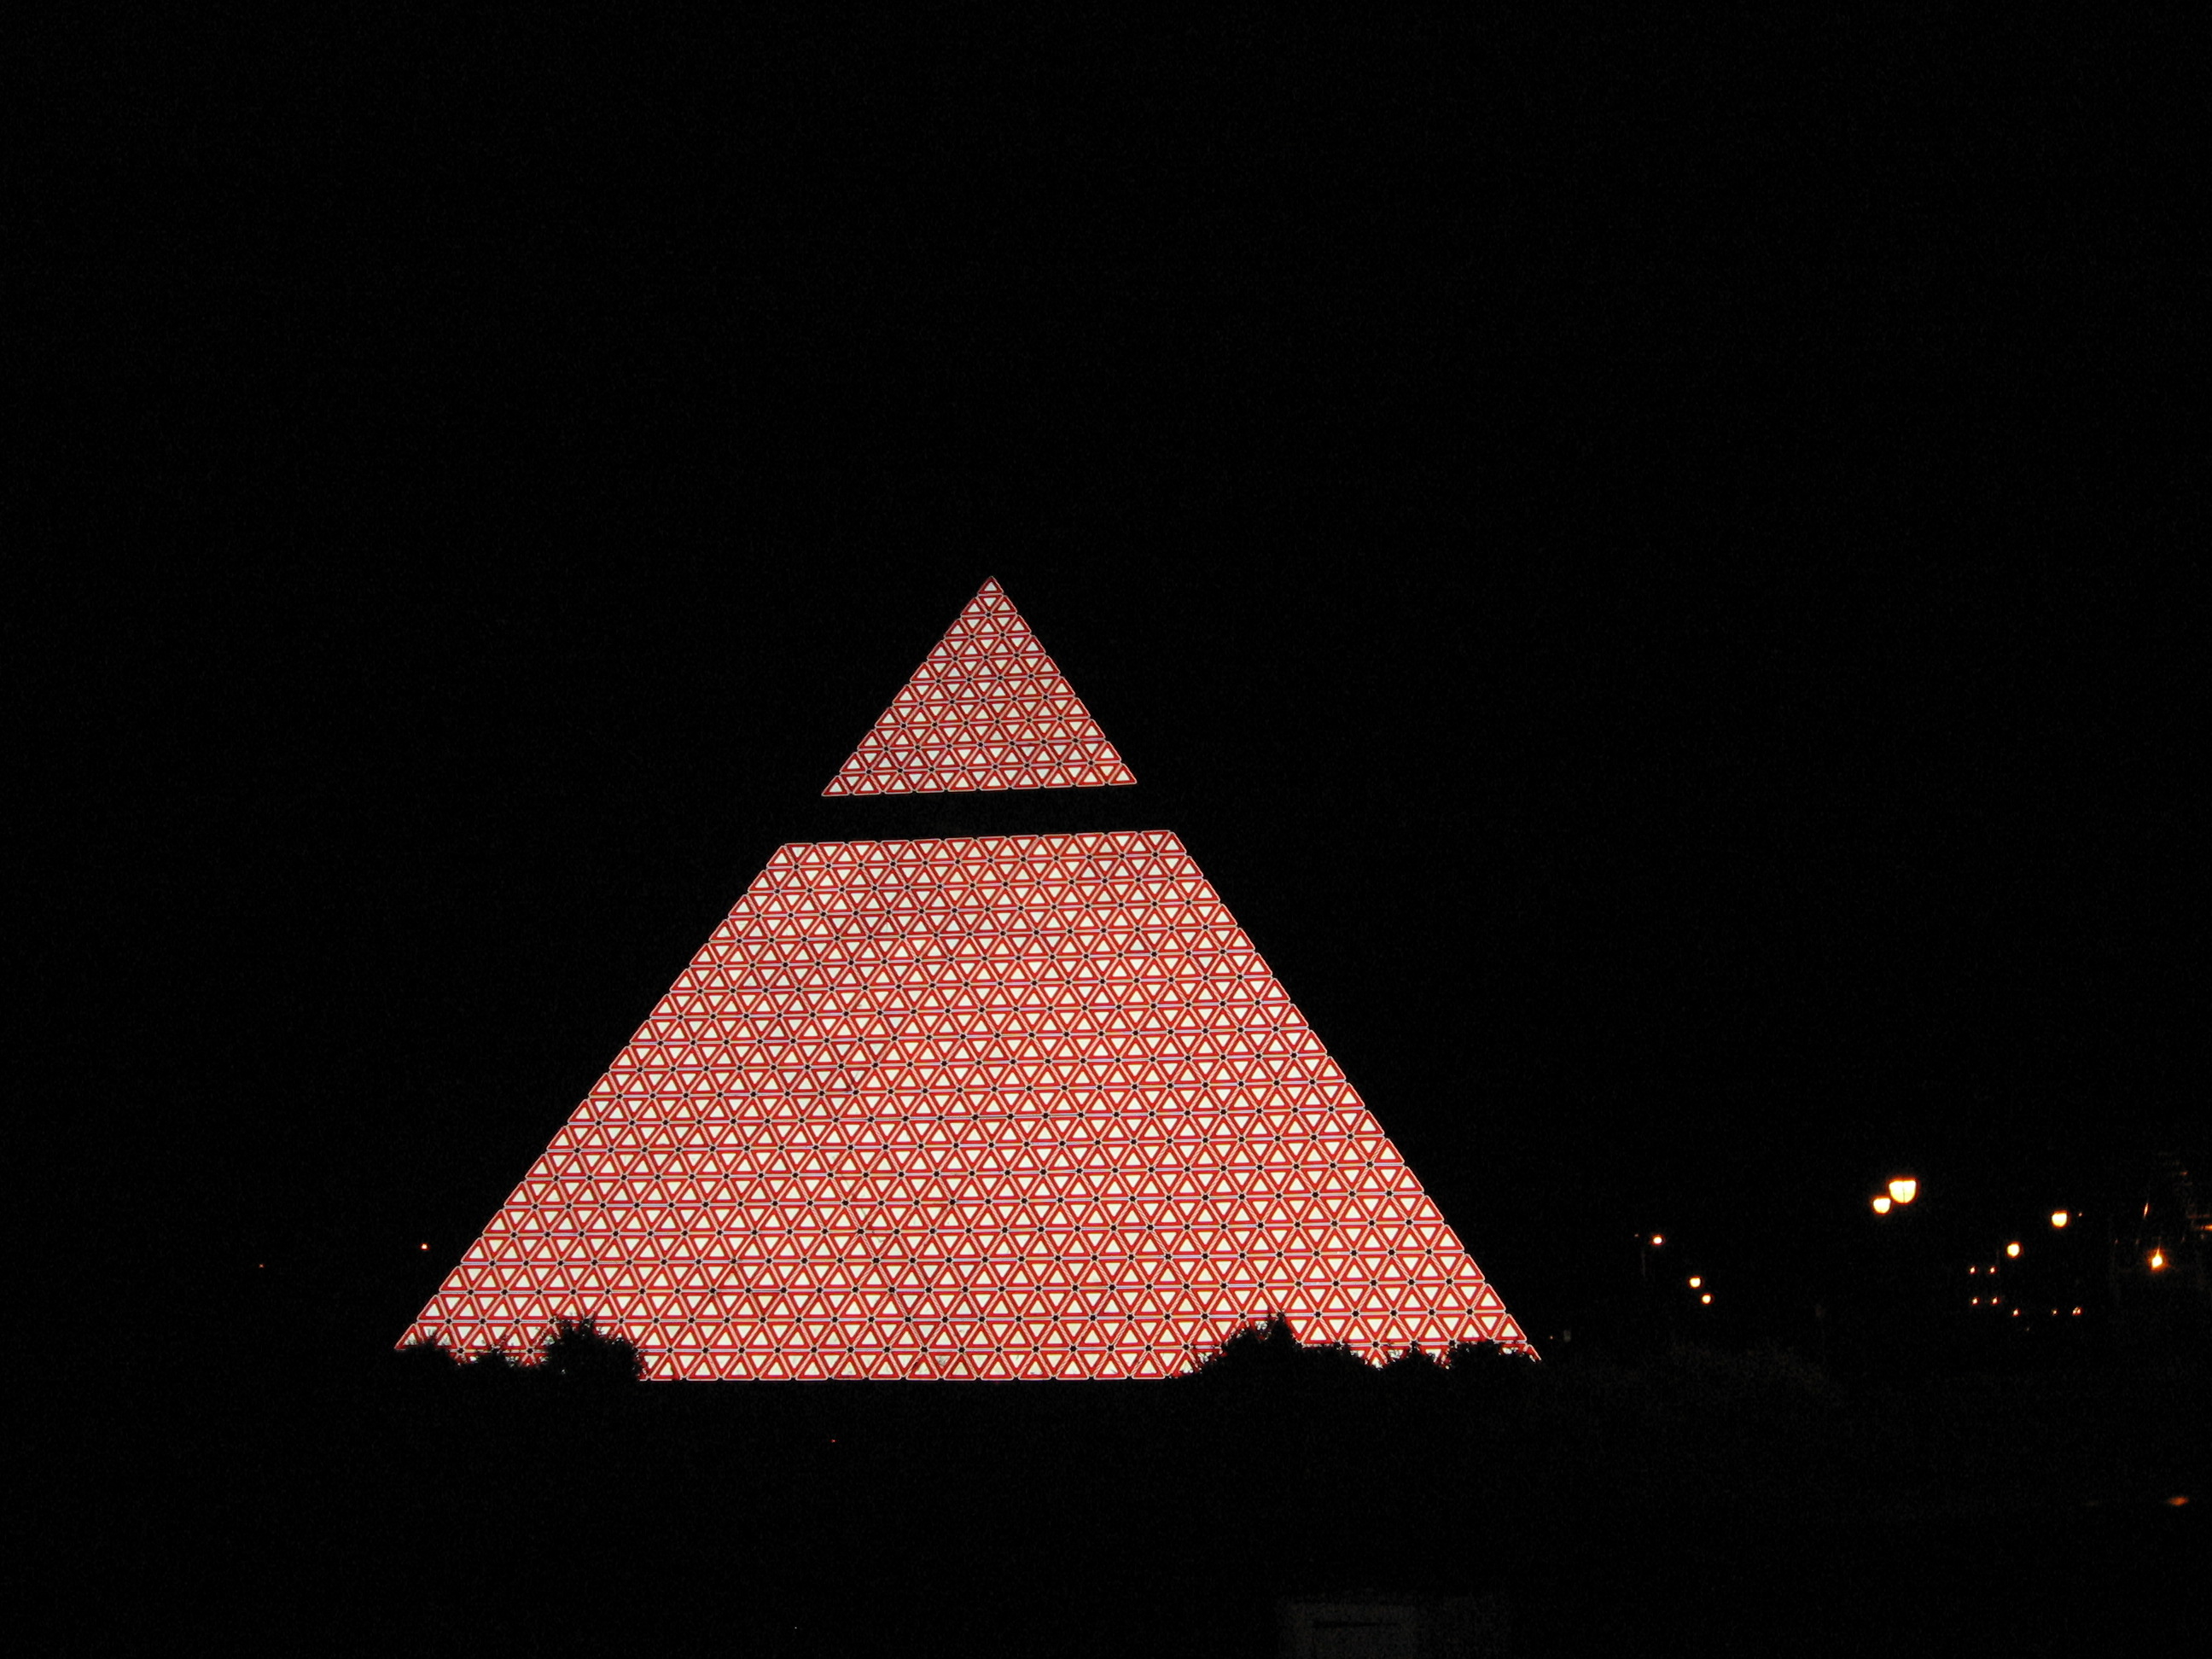 Pyramide des Ha! Ha!